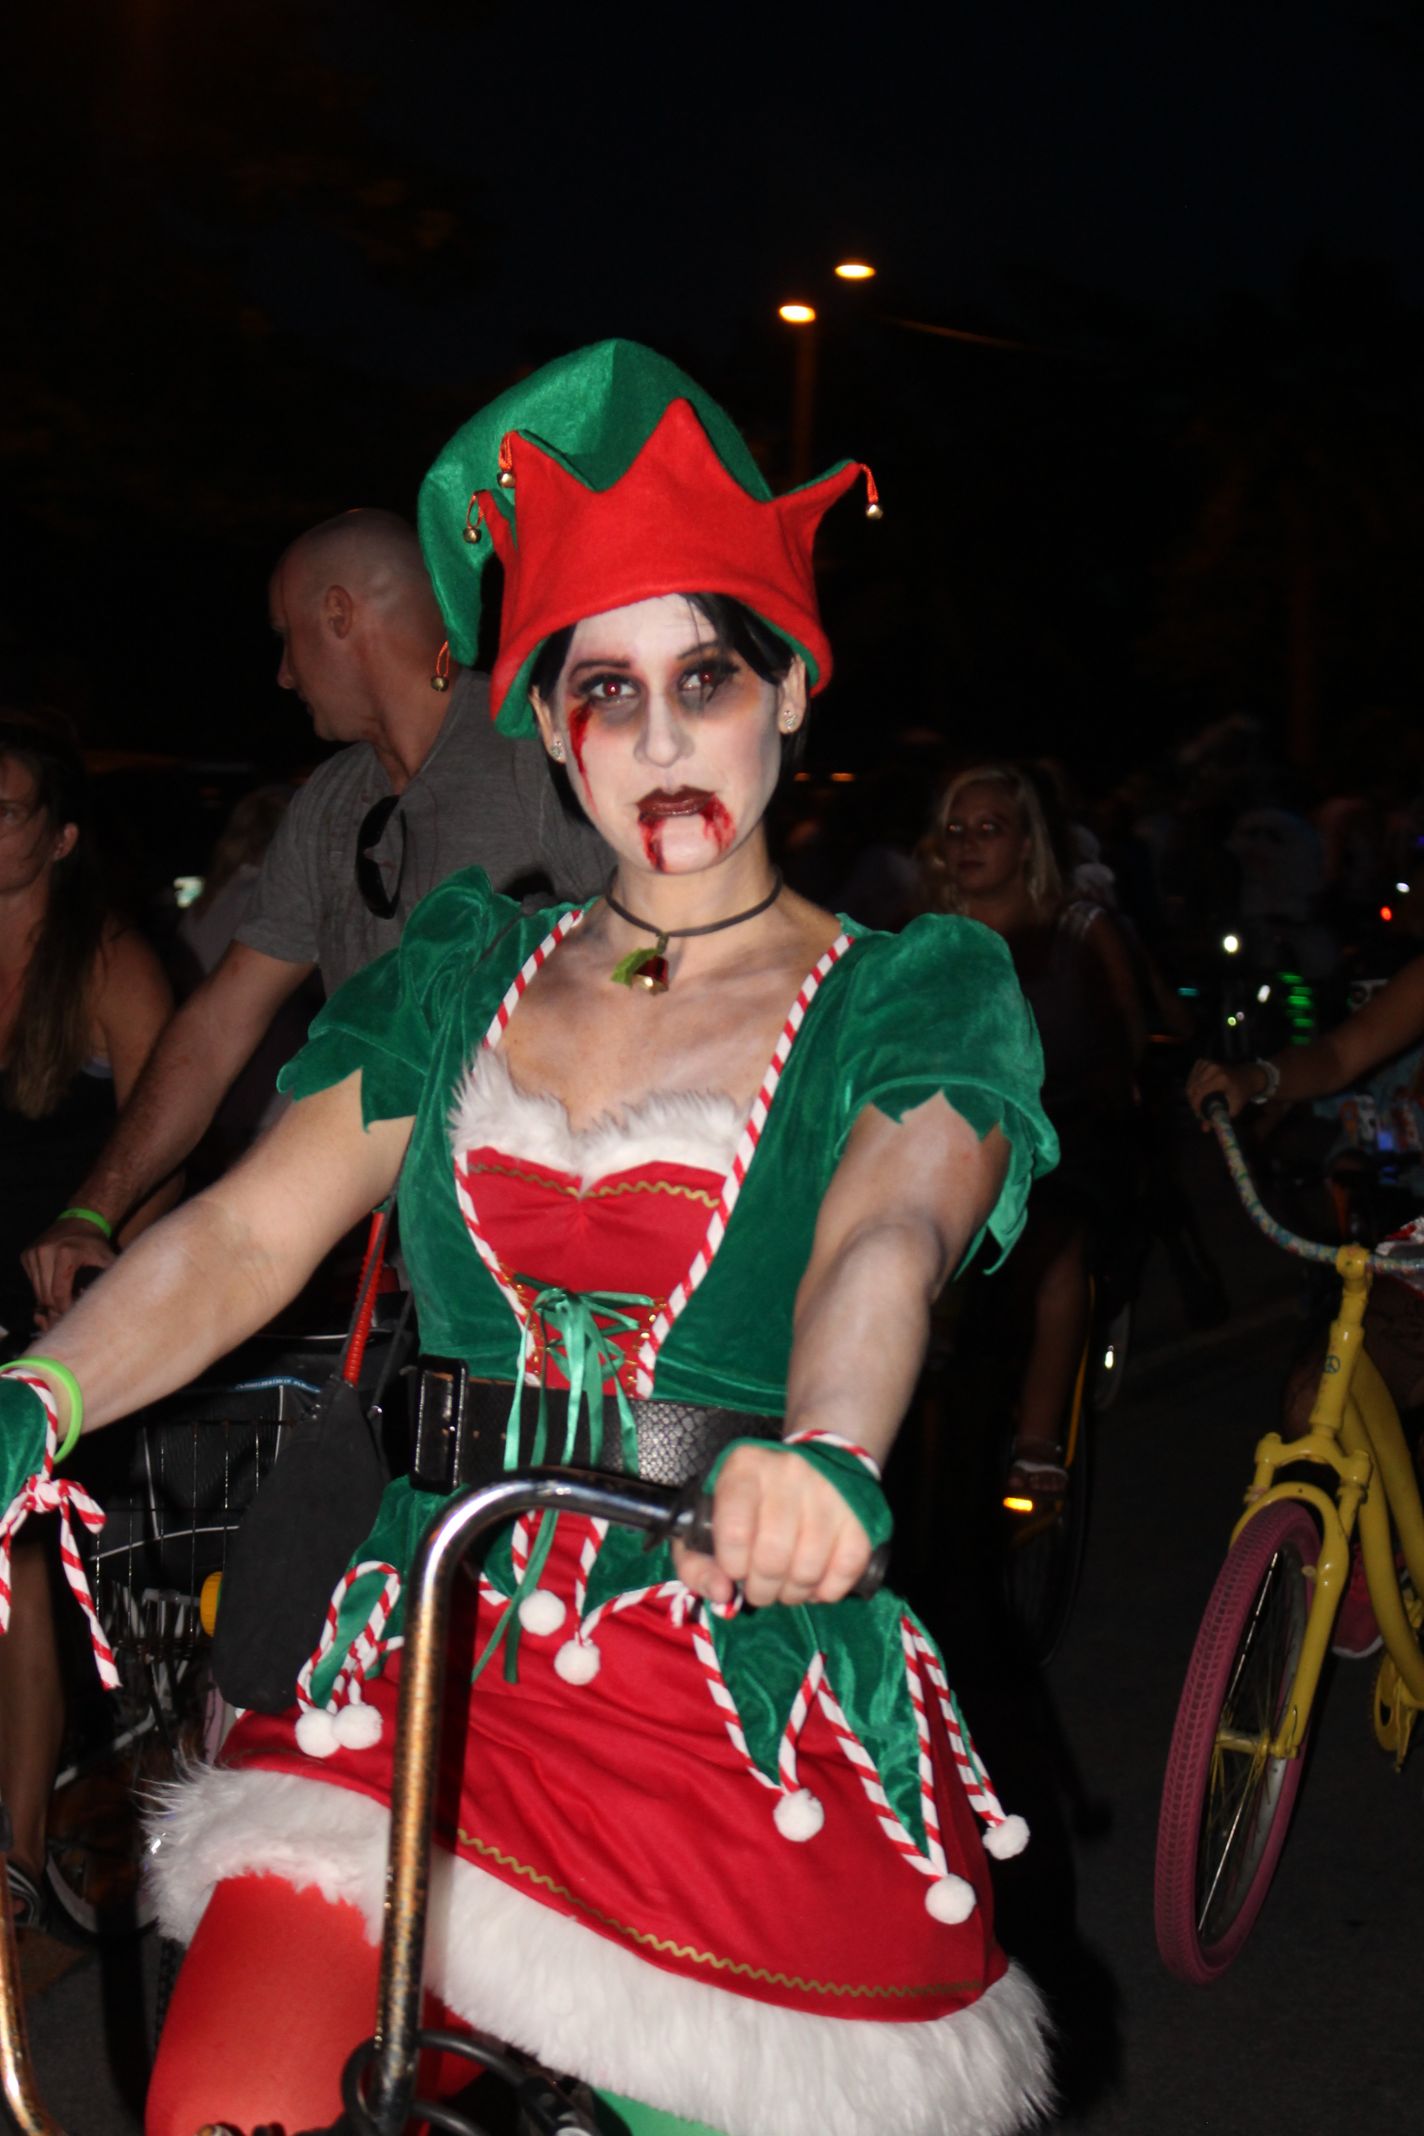 2015 Zombie Bike Ride